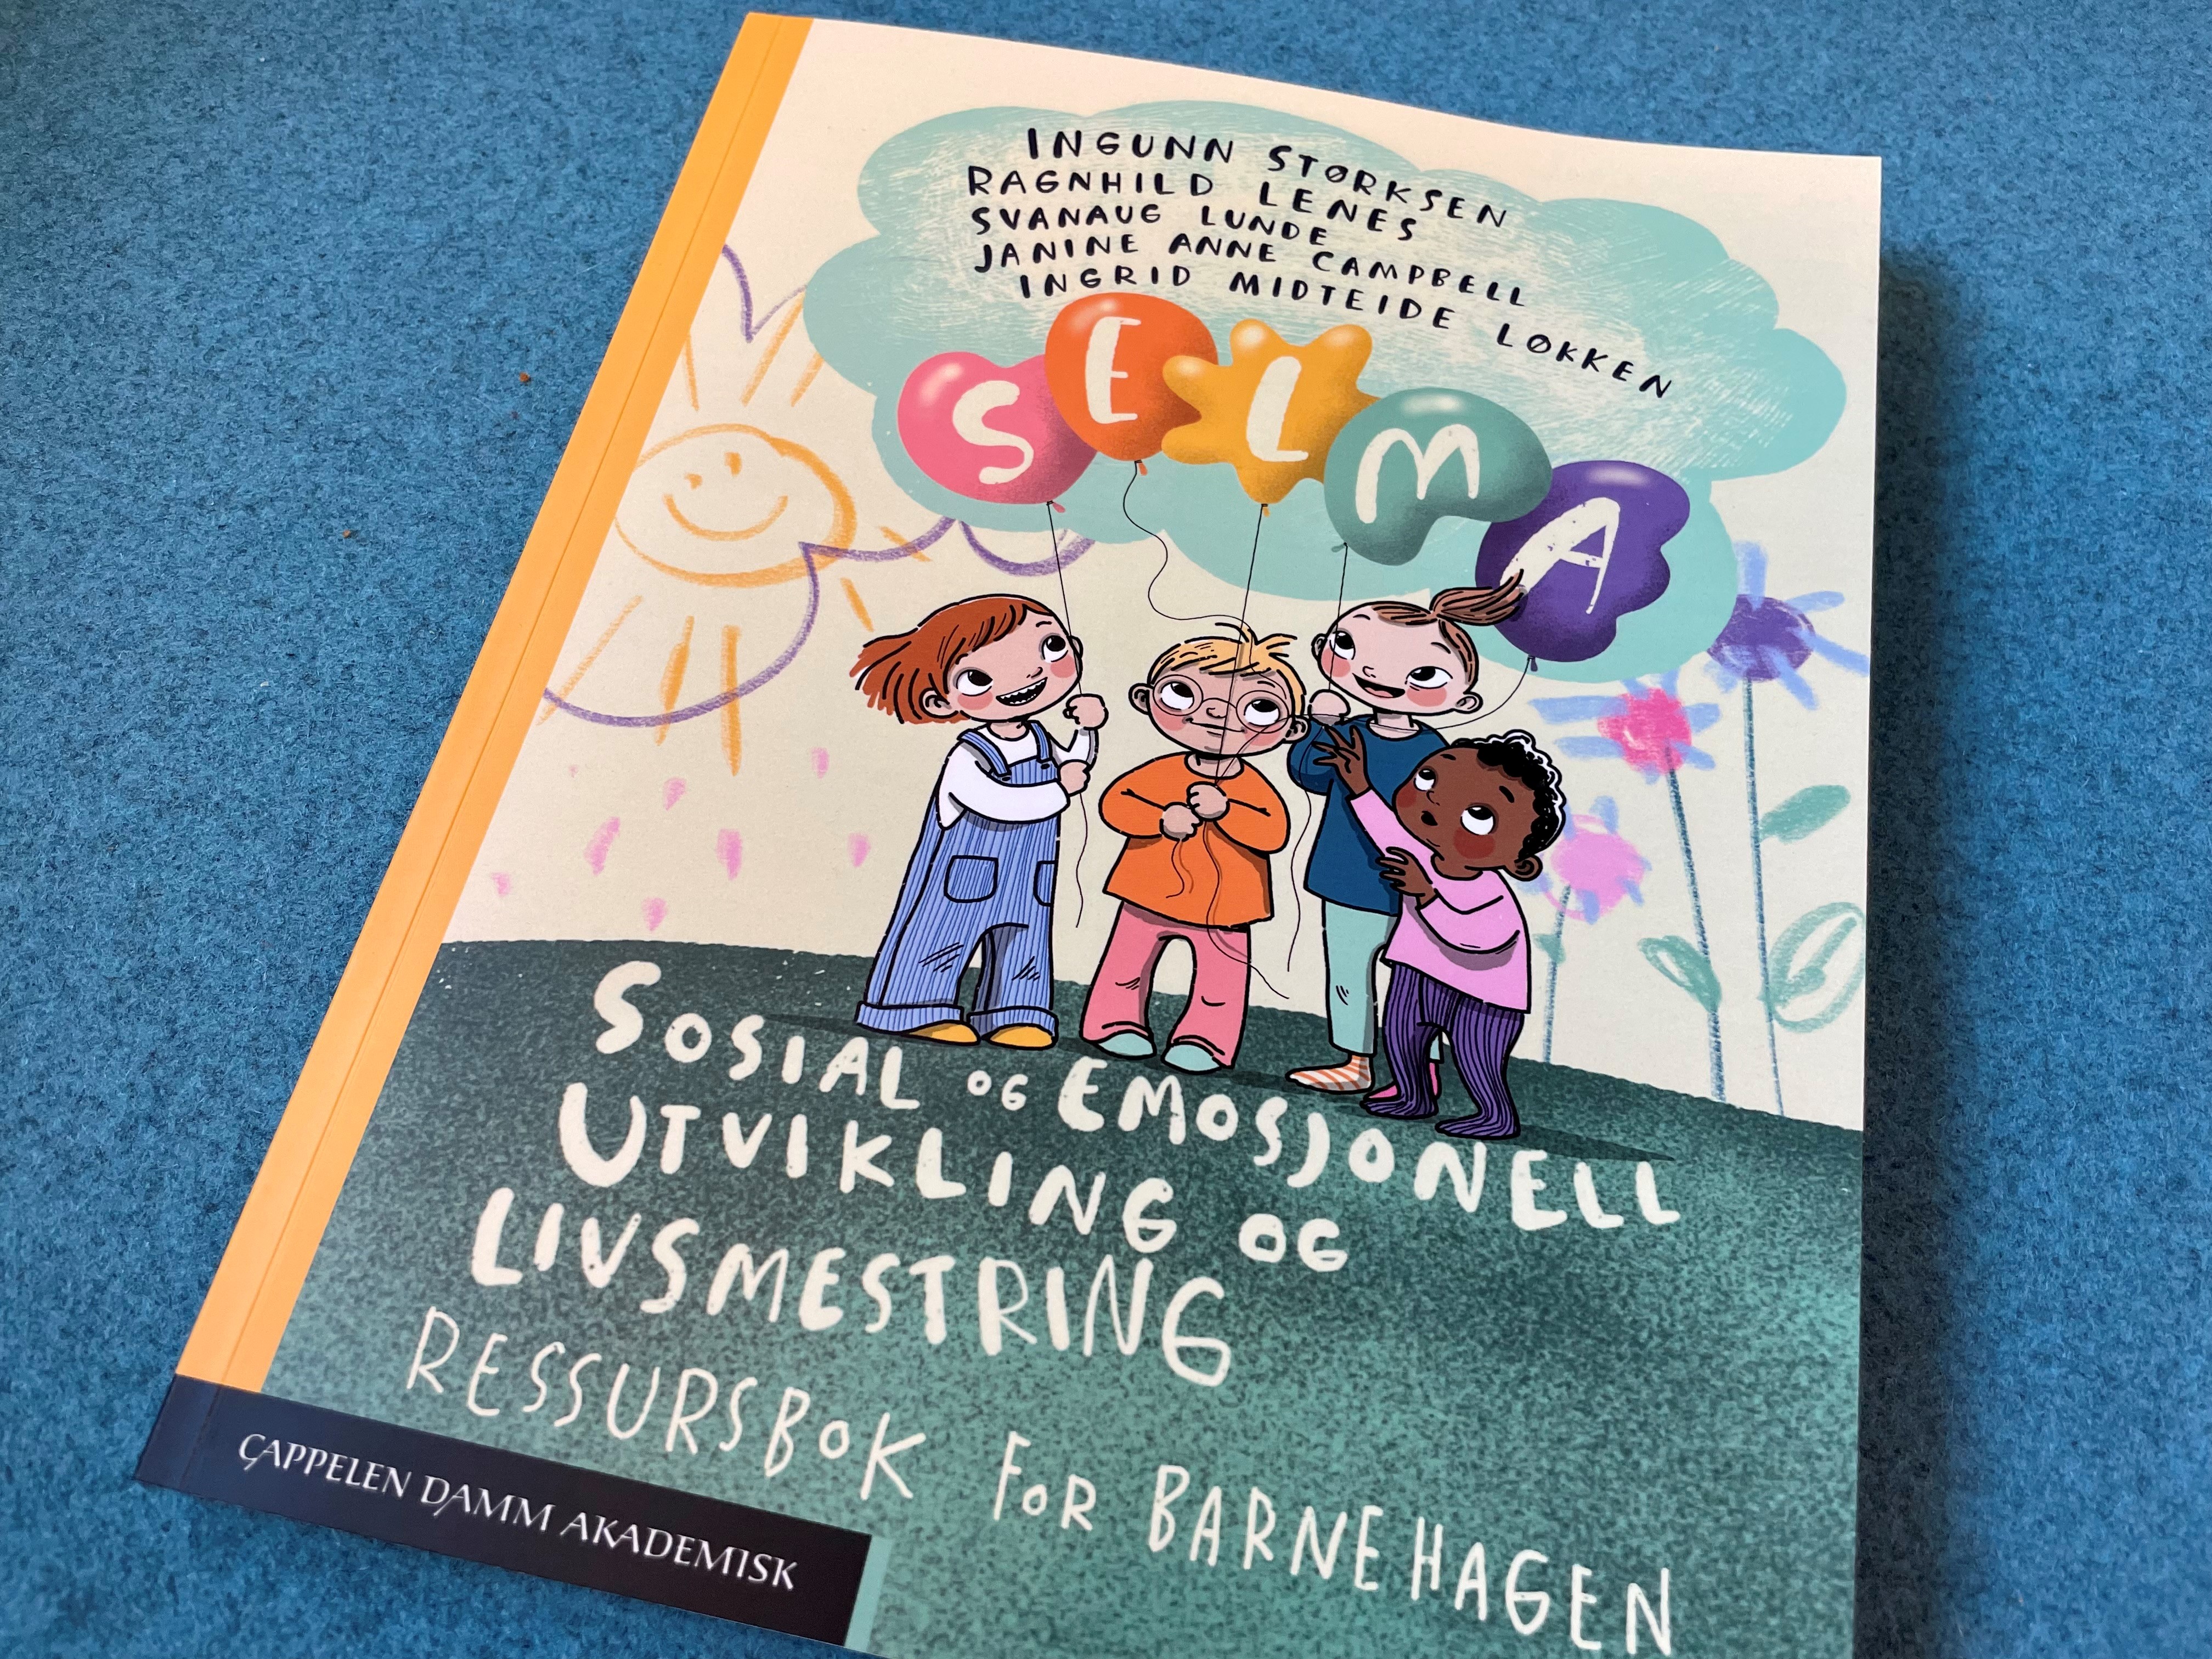 Bilde av boken "Sosial og emosjonell utvikling og livsmestring. Ressursbok for barnehagen".